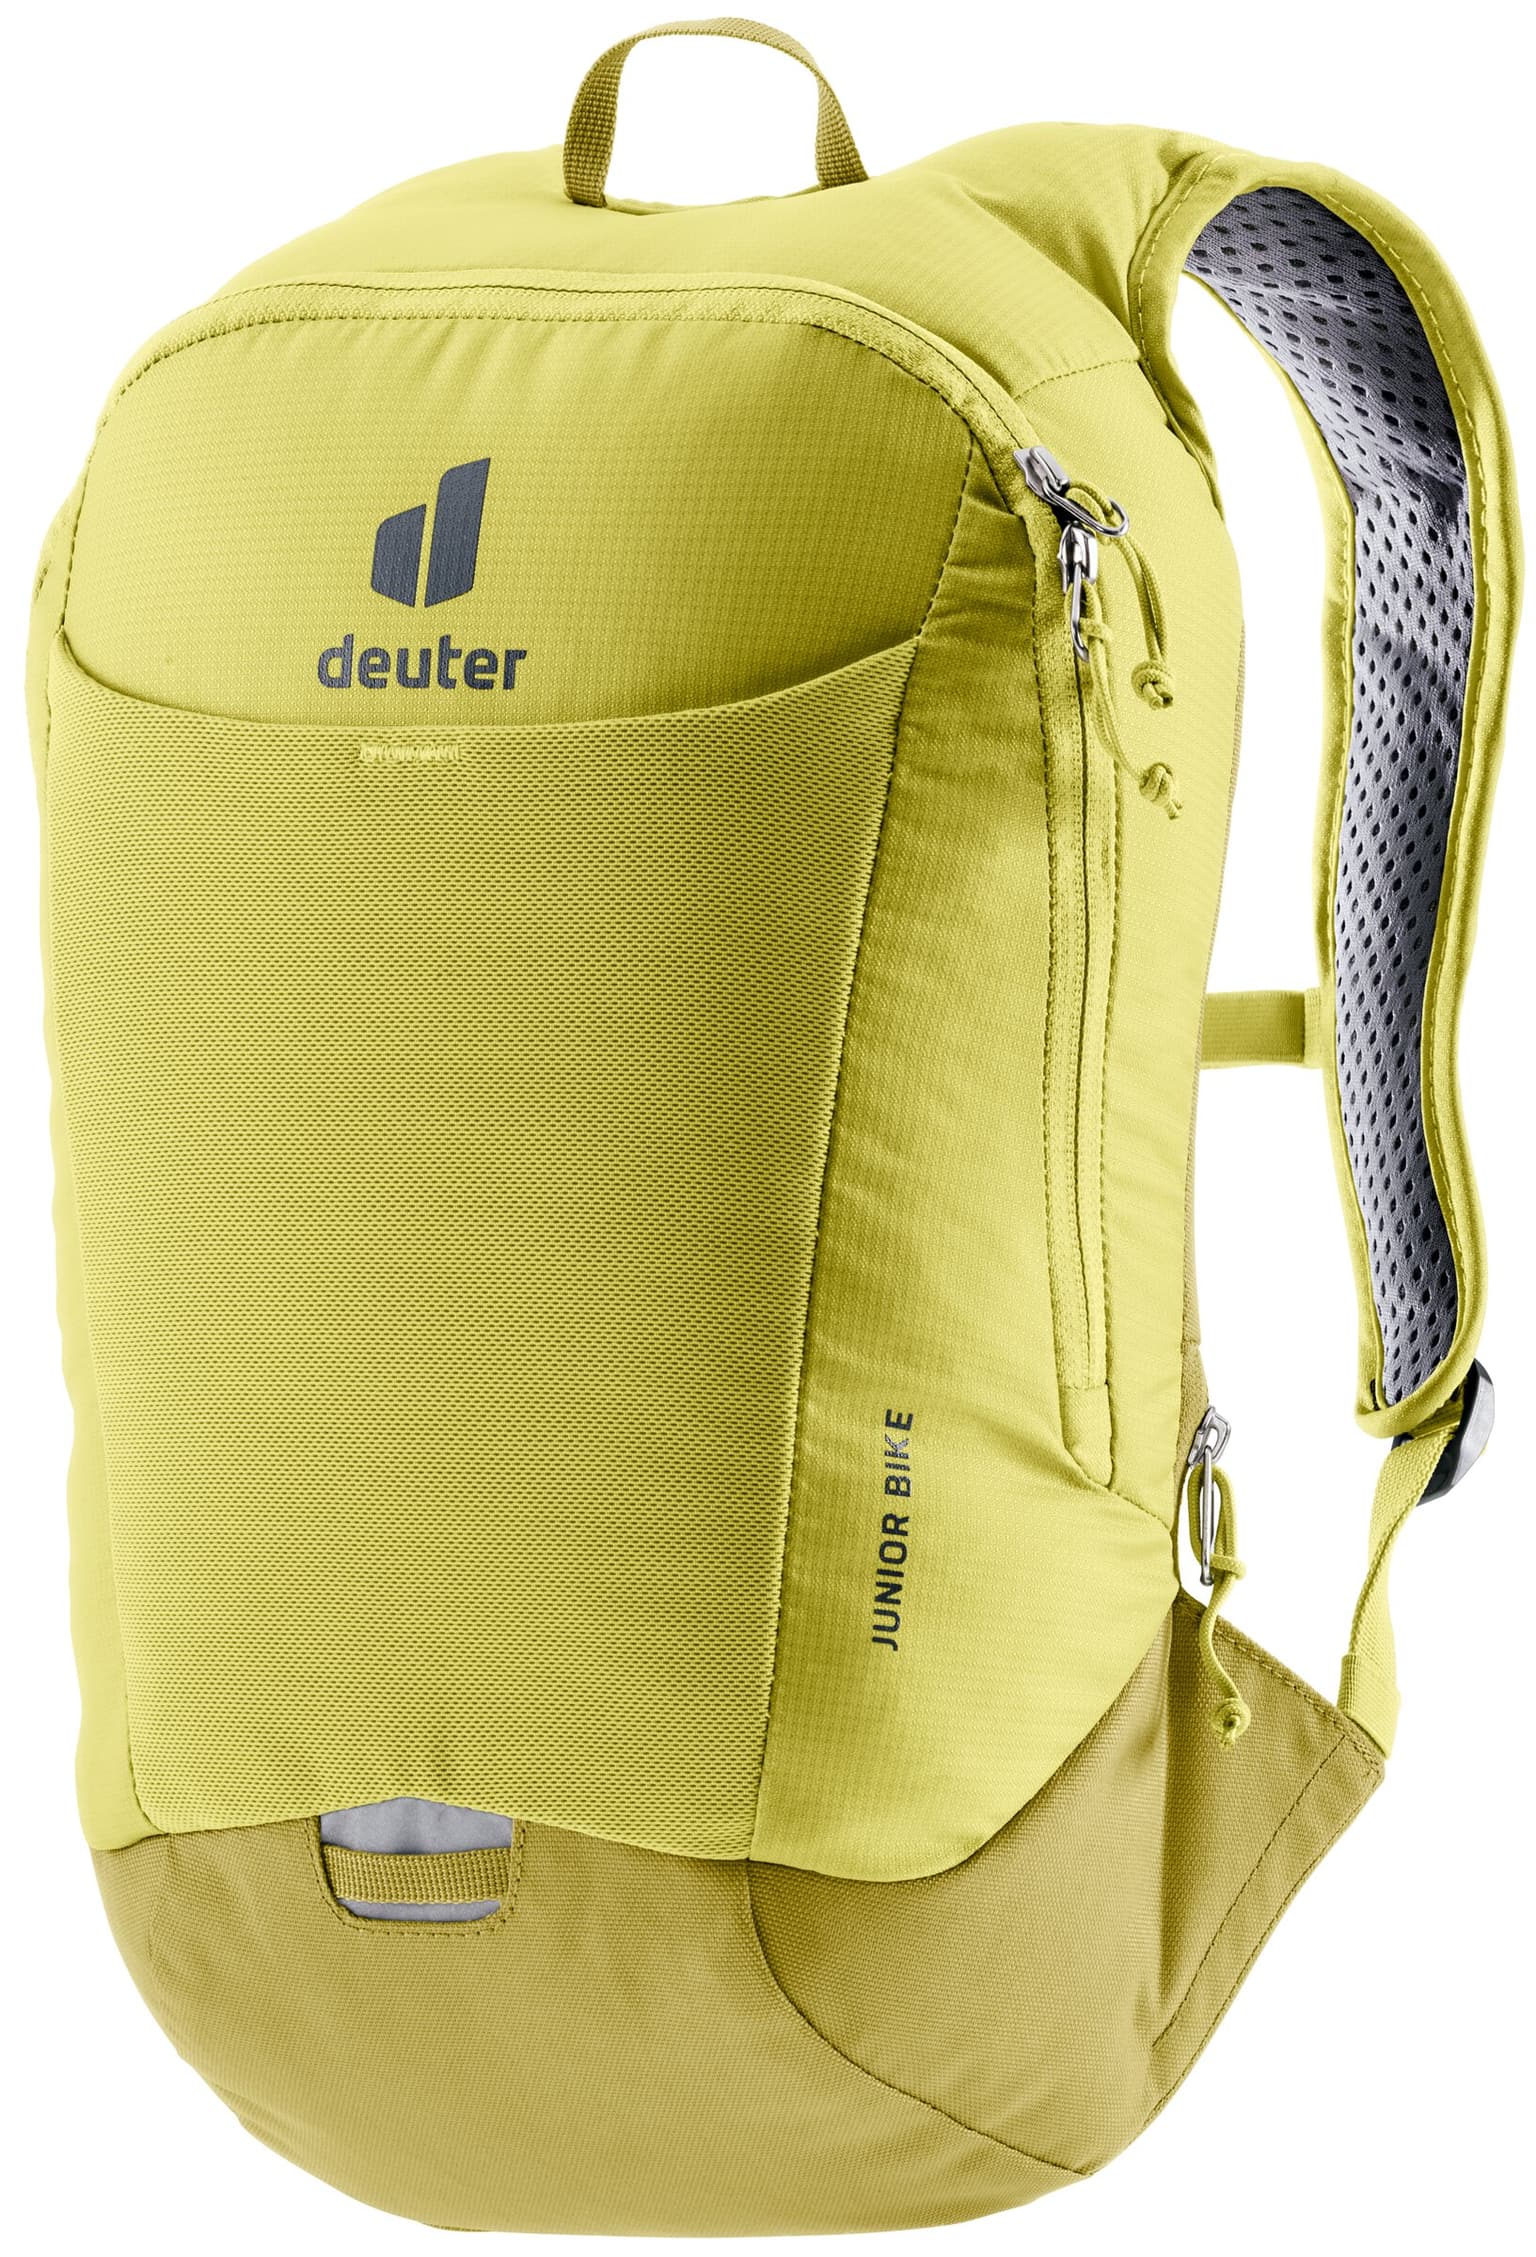 Deuter Deuter Junior Bike Bikerucksack jaune-fonce 1